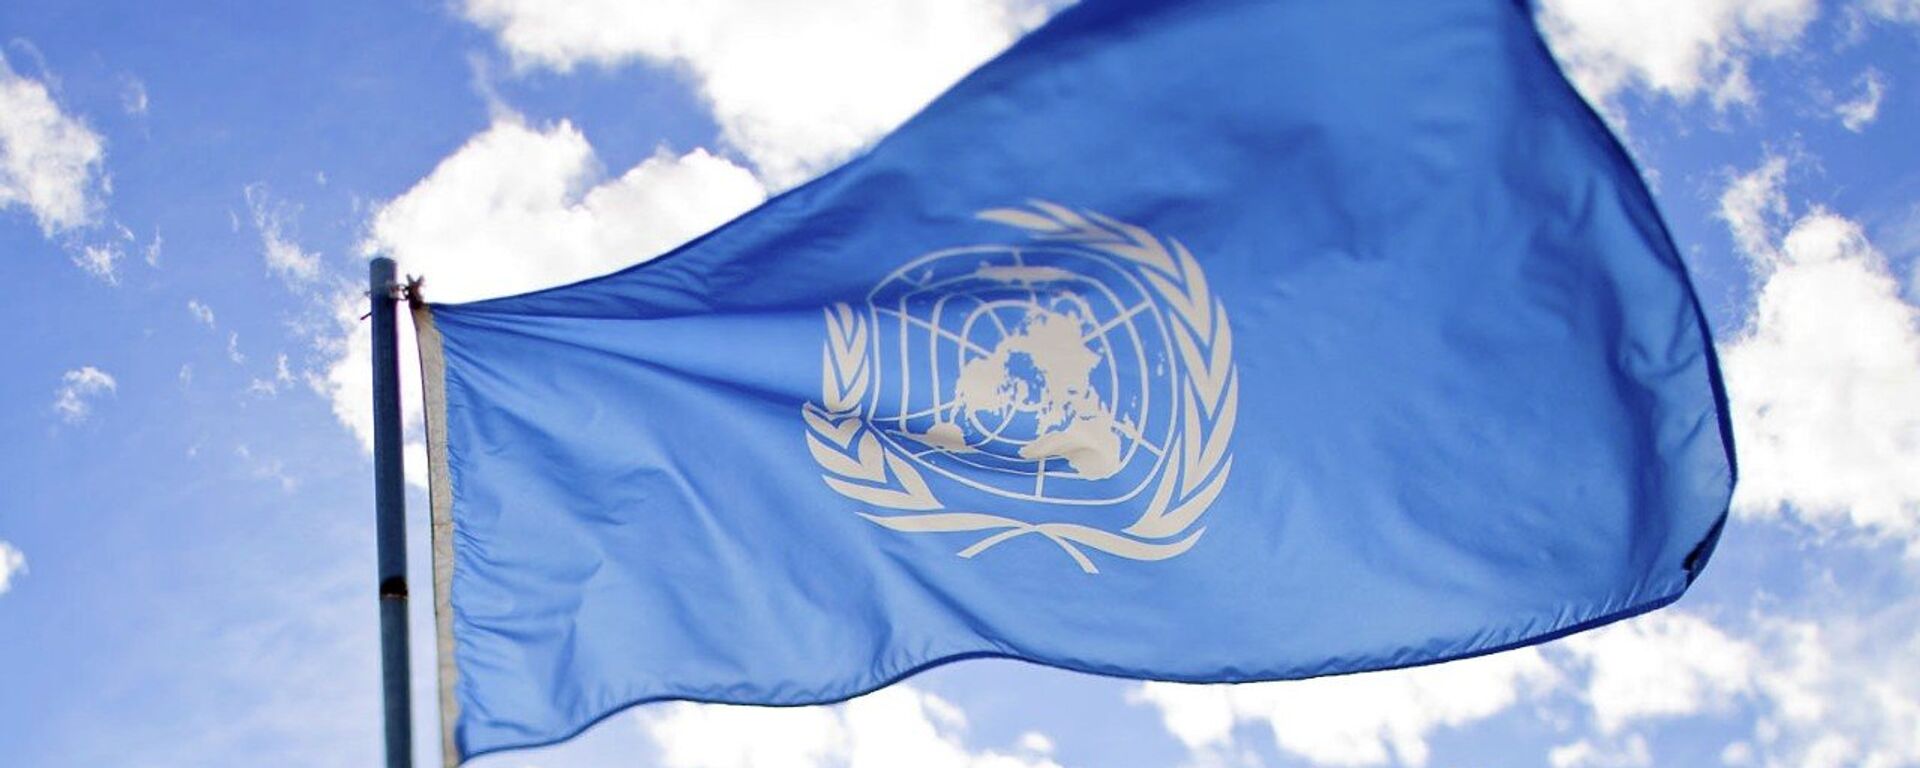 La bandera de la ONU - Sputnik Mundo, 1920, 05.11.2021